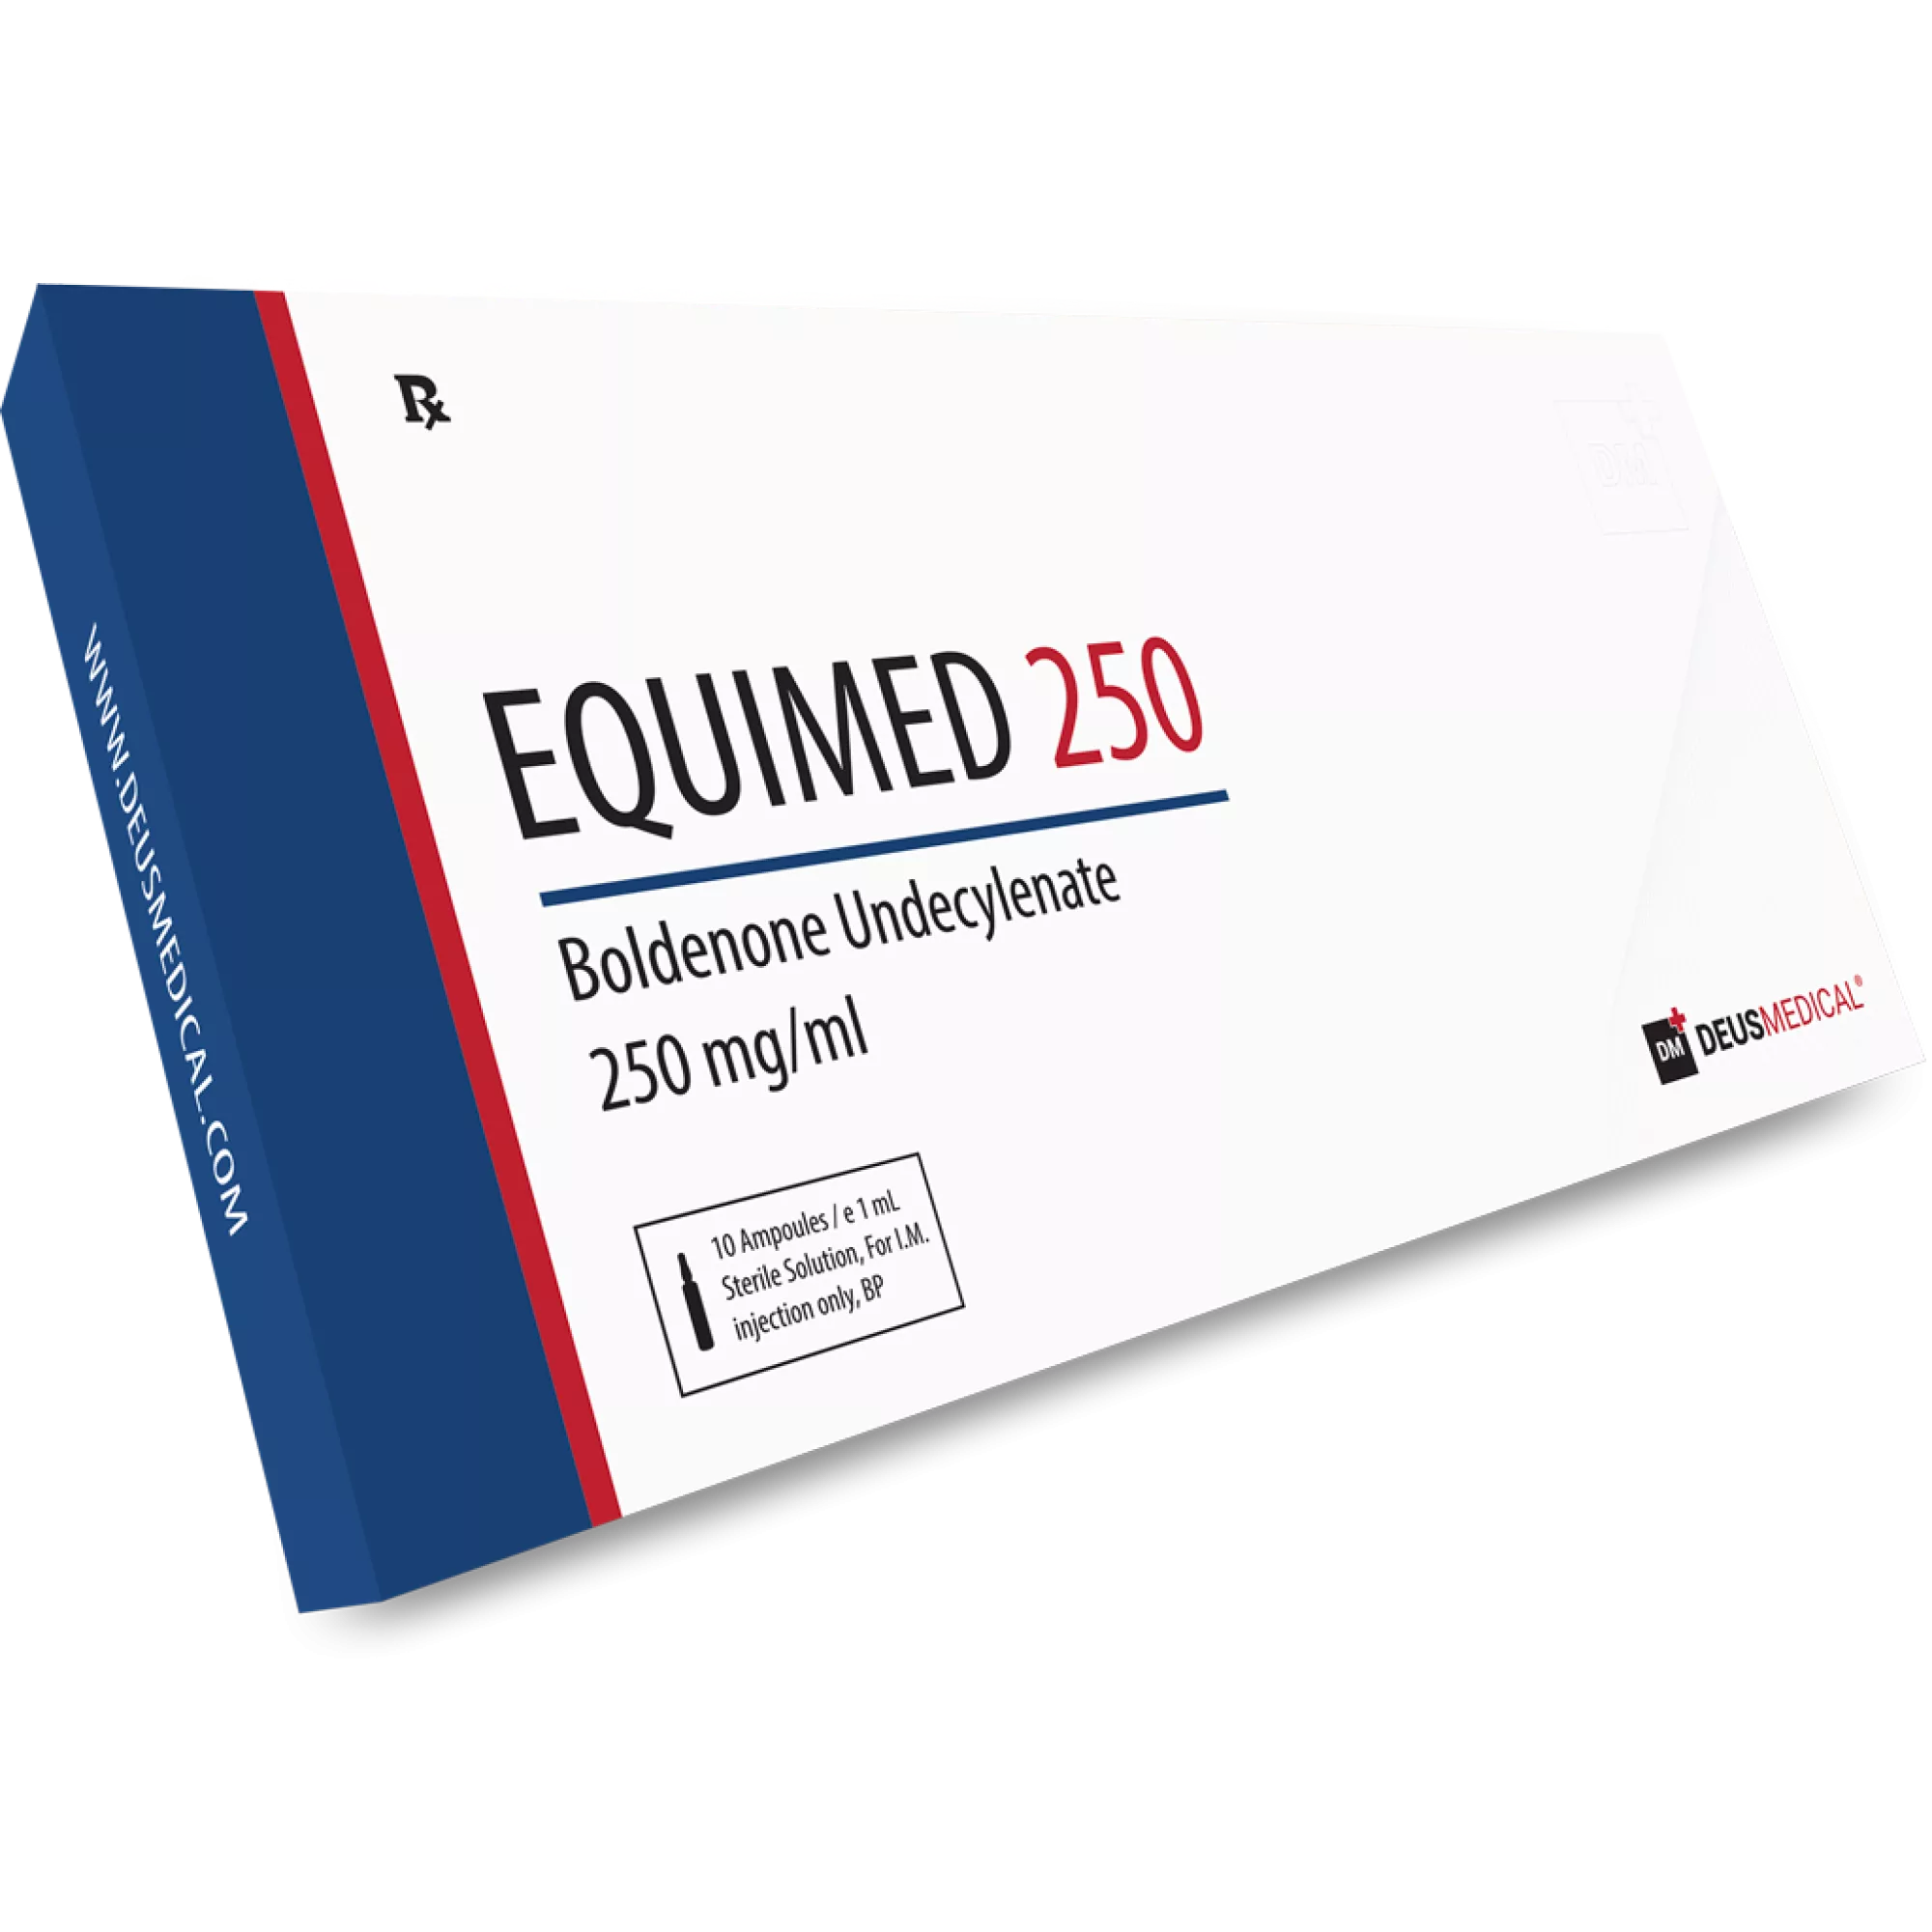 EQUIMED 250 (Boldenone undecylenate), Deus Medical, Buy Steroids Online - www.deuspower.shop